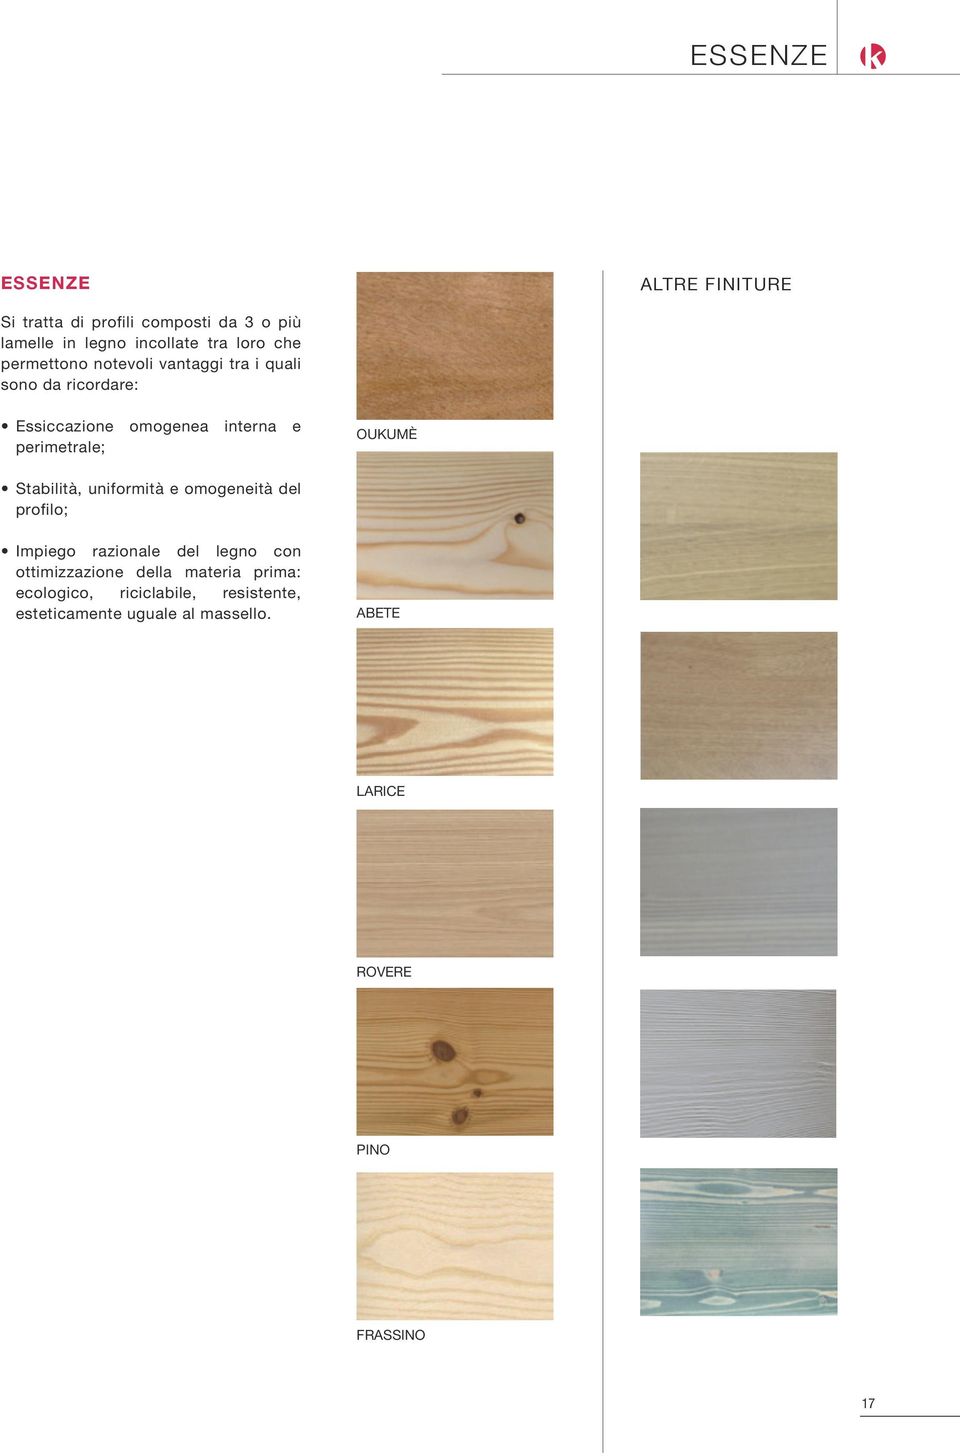 Stabilità, uniformità e omogeneità del profilo; Impiego razionale del legno con ottimizzazione della materia